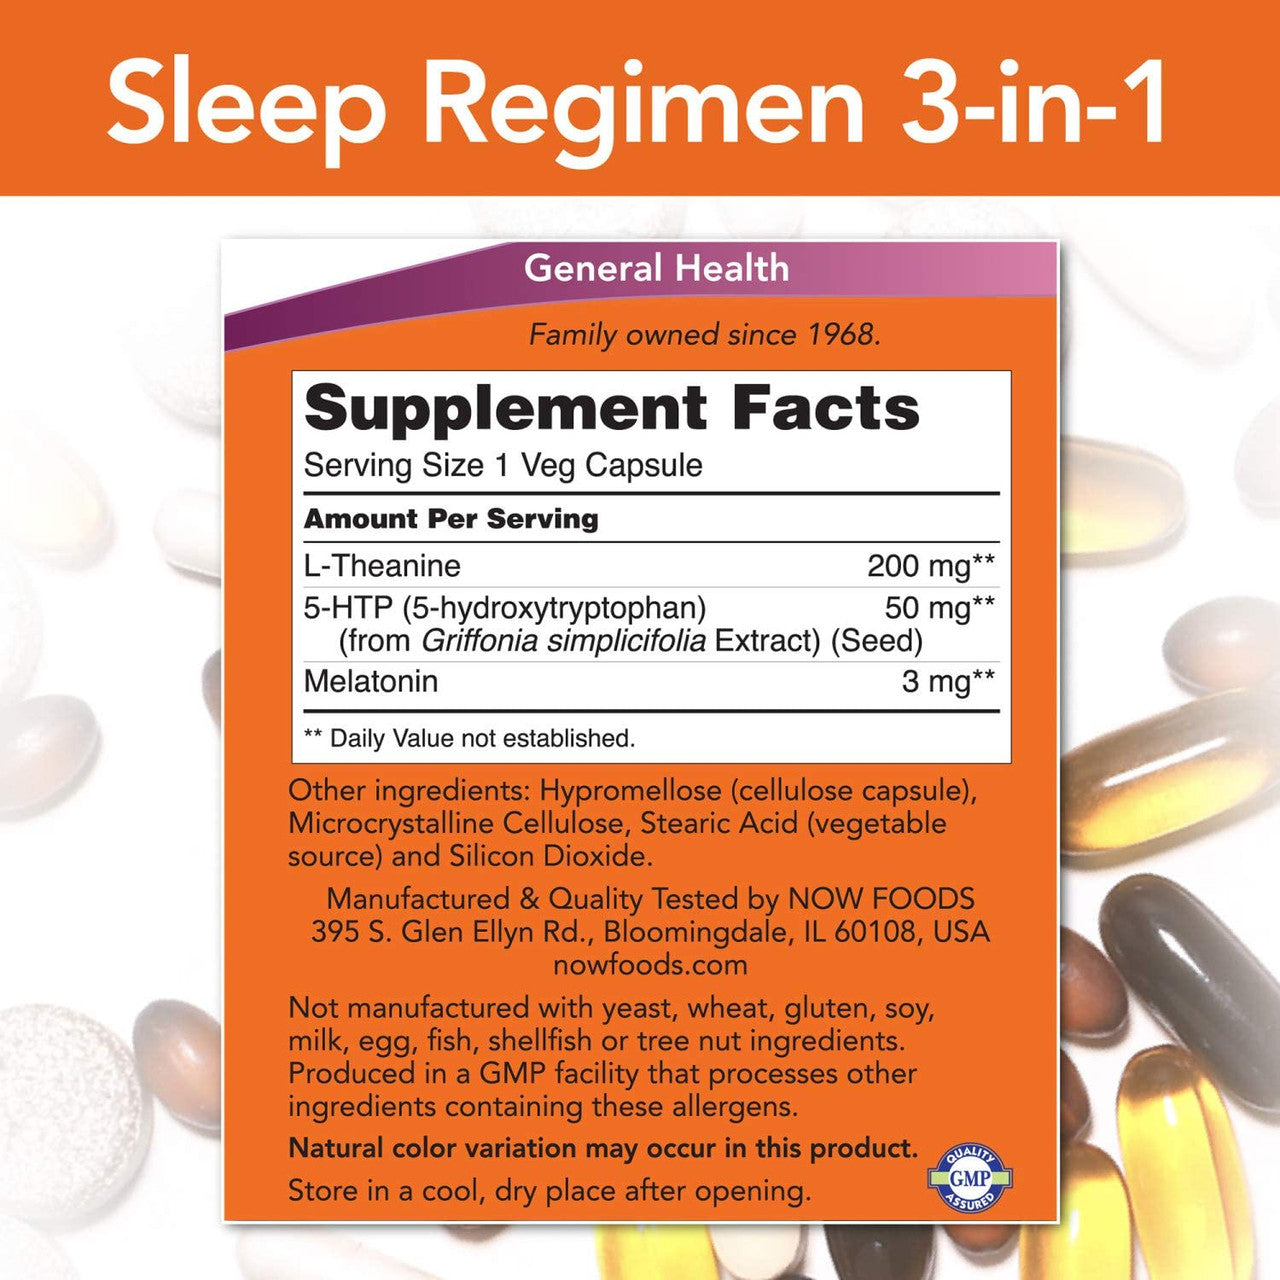 Now Sleep Regimen 3-In-1 supplement facts